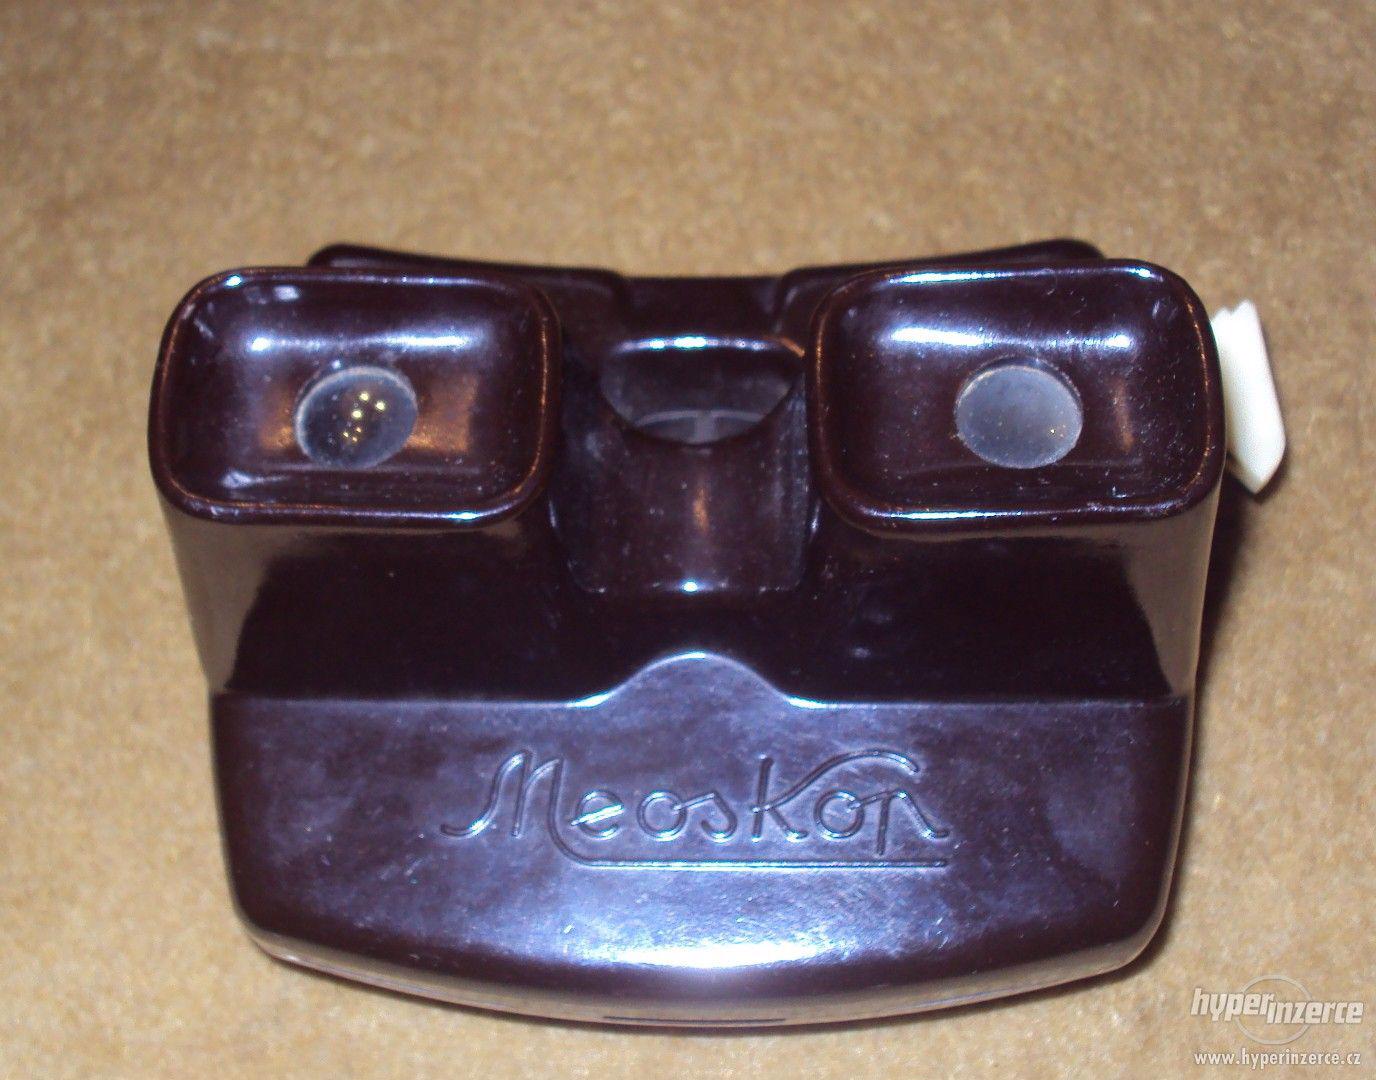 Starožitné stereo kukátko Meosko - foto 1